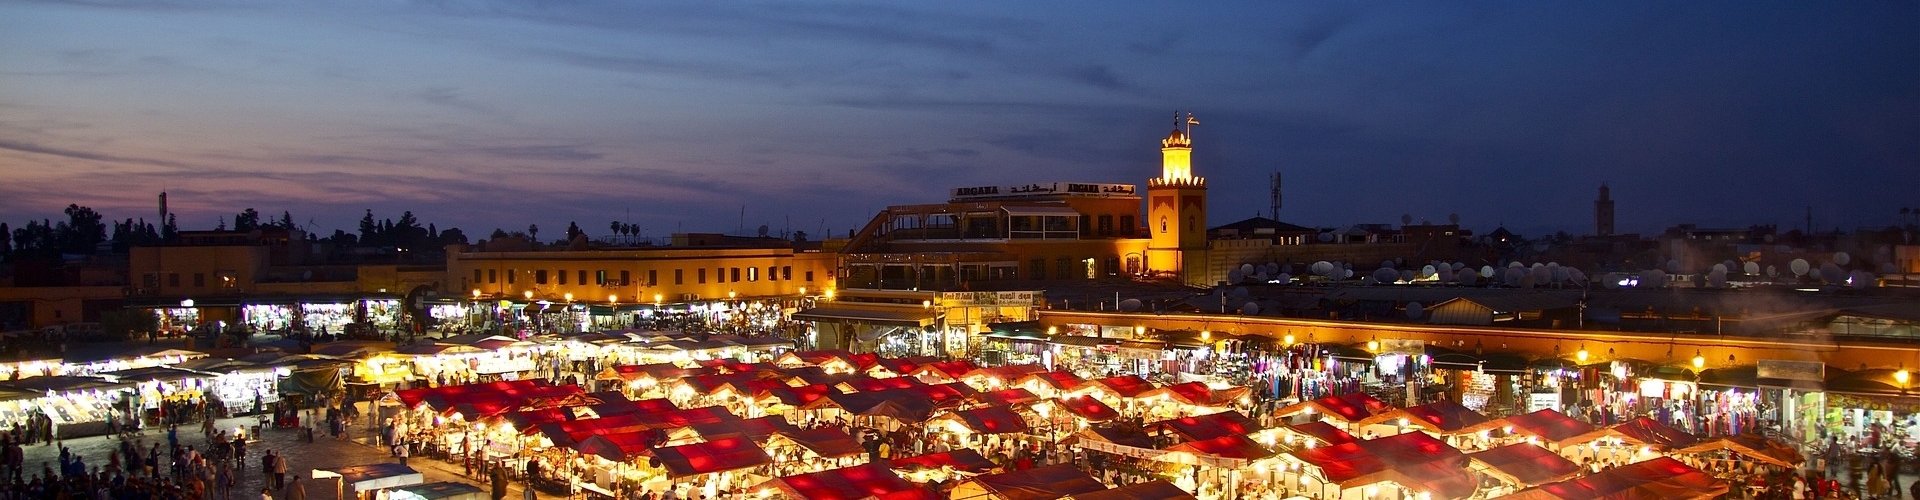 stedentrip-marrakesh